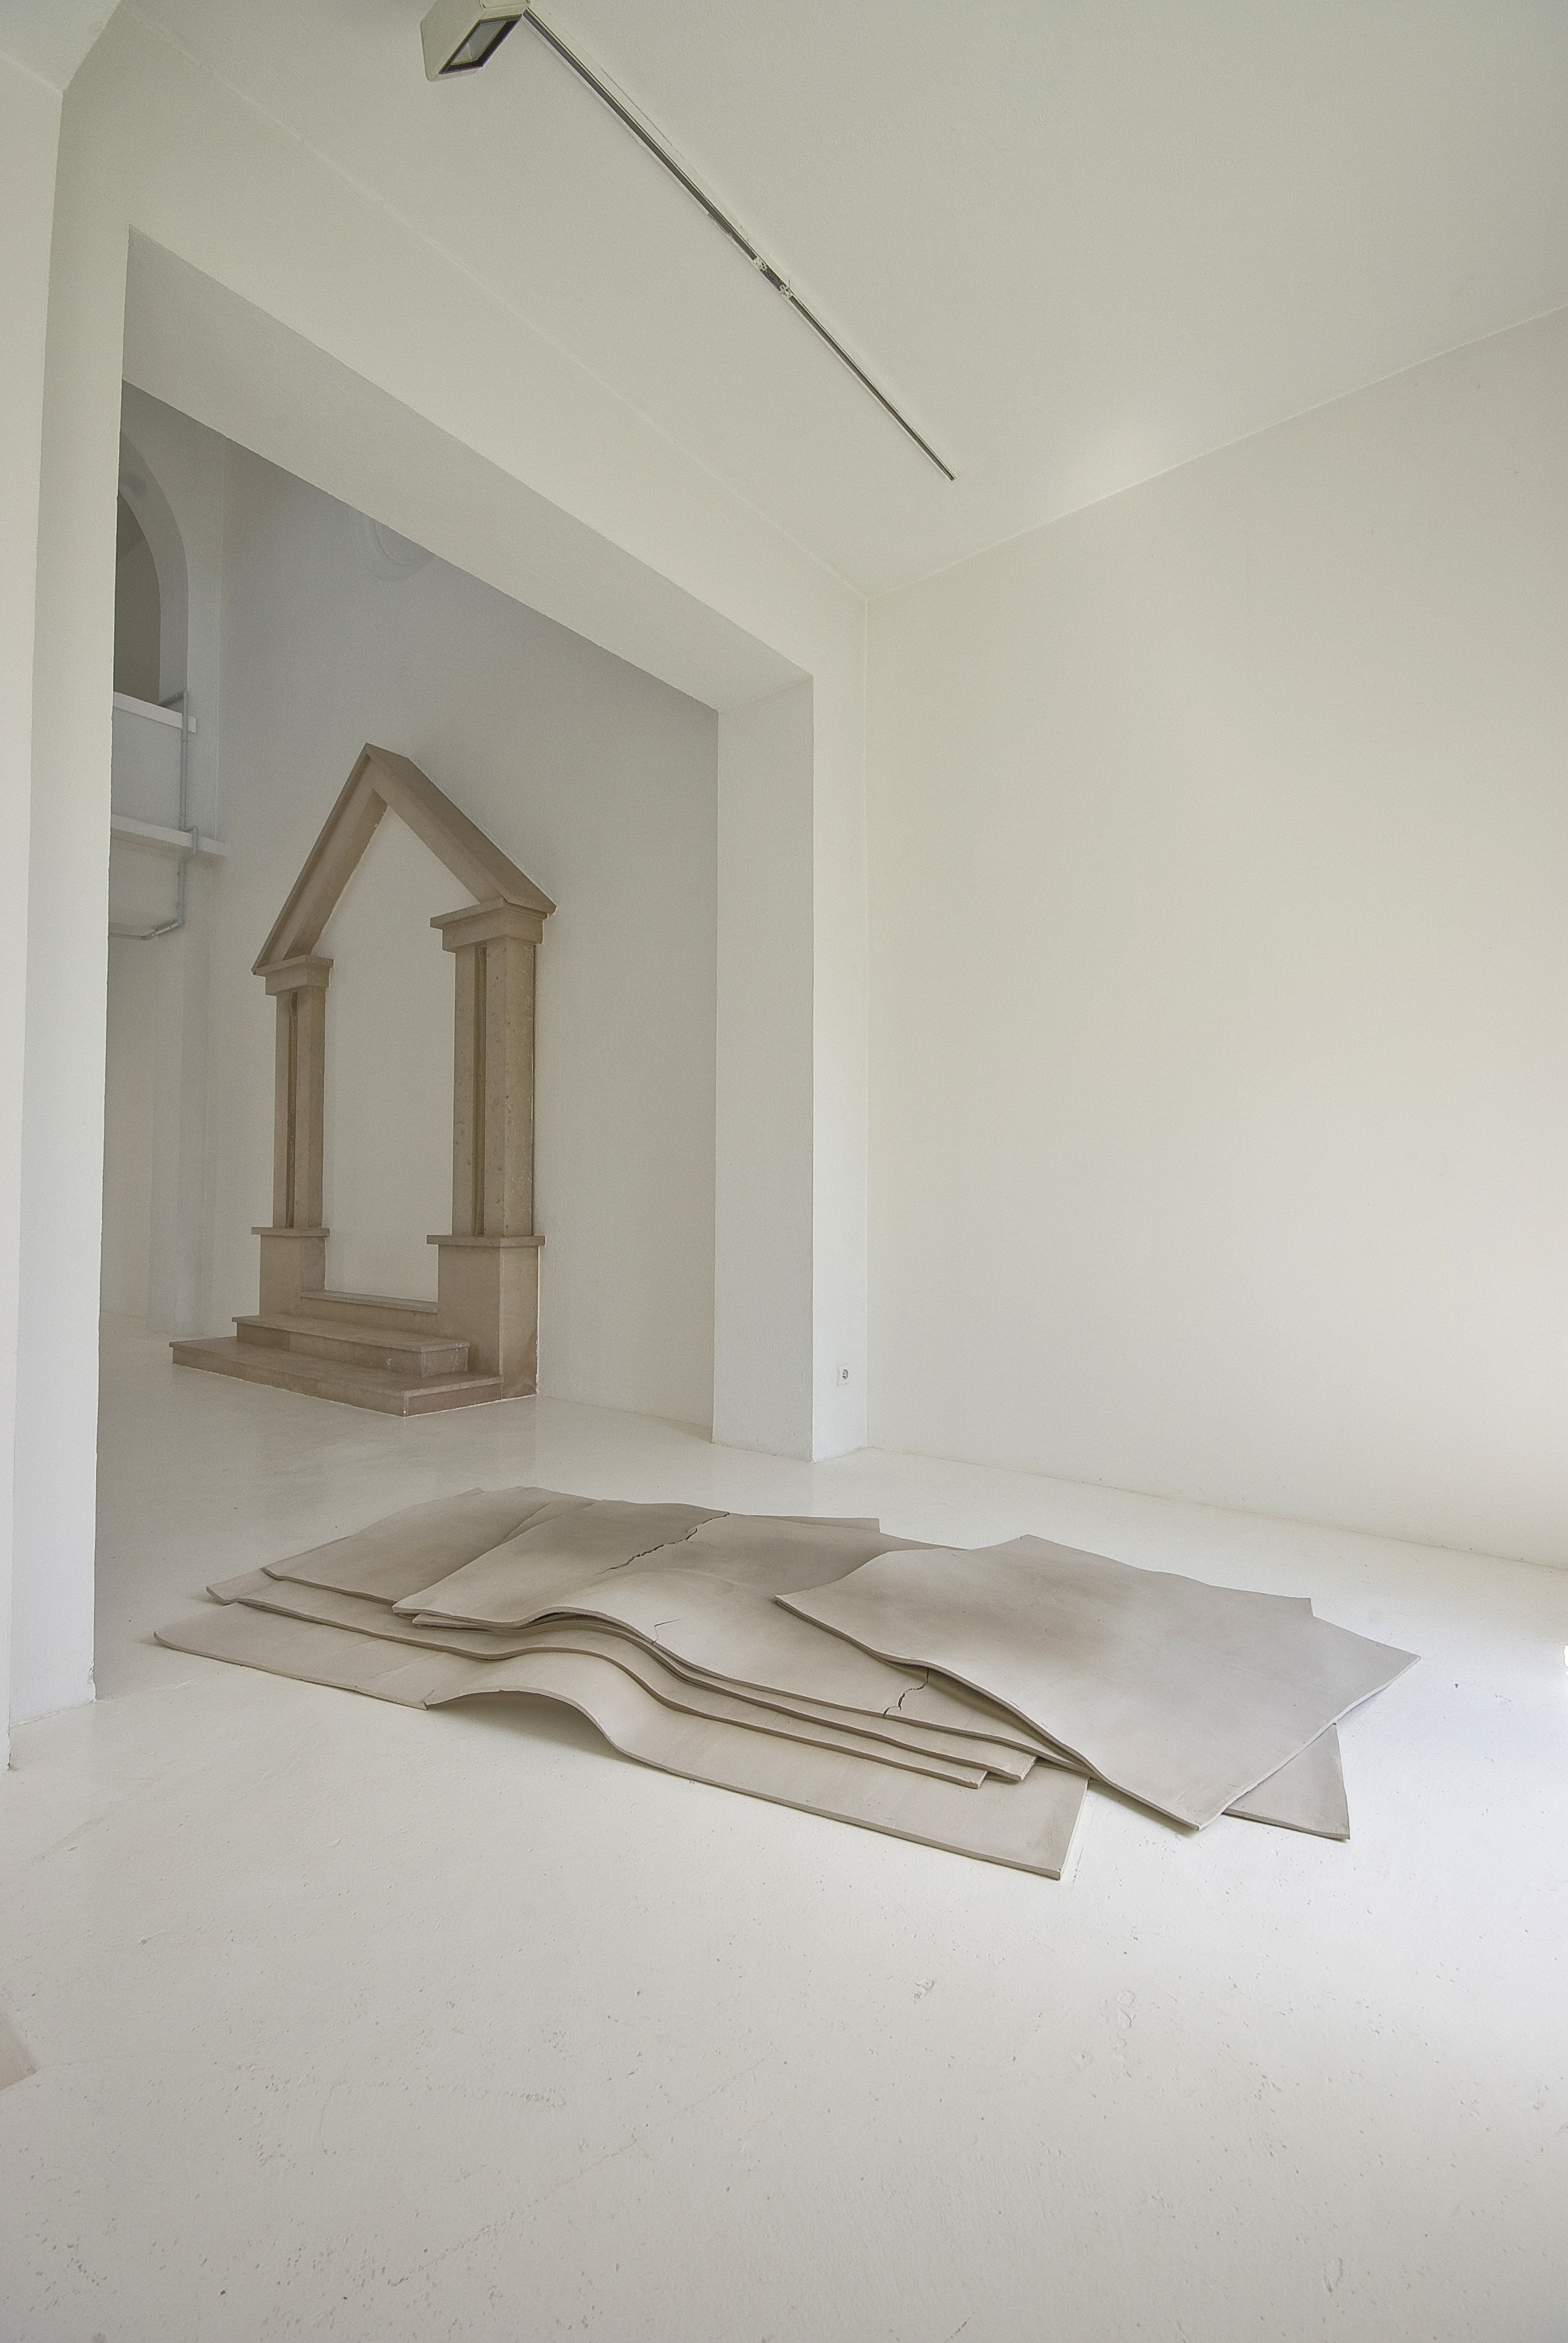 Sechs Flächen und ein Raum, 2008. Argile. 280 x 160 cm Courtesy Galerie Jocelyn Wolff et Katinka Bock. Photo Olivier Dancy